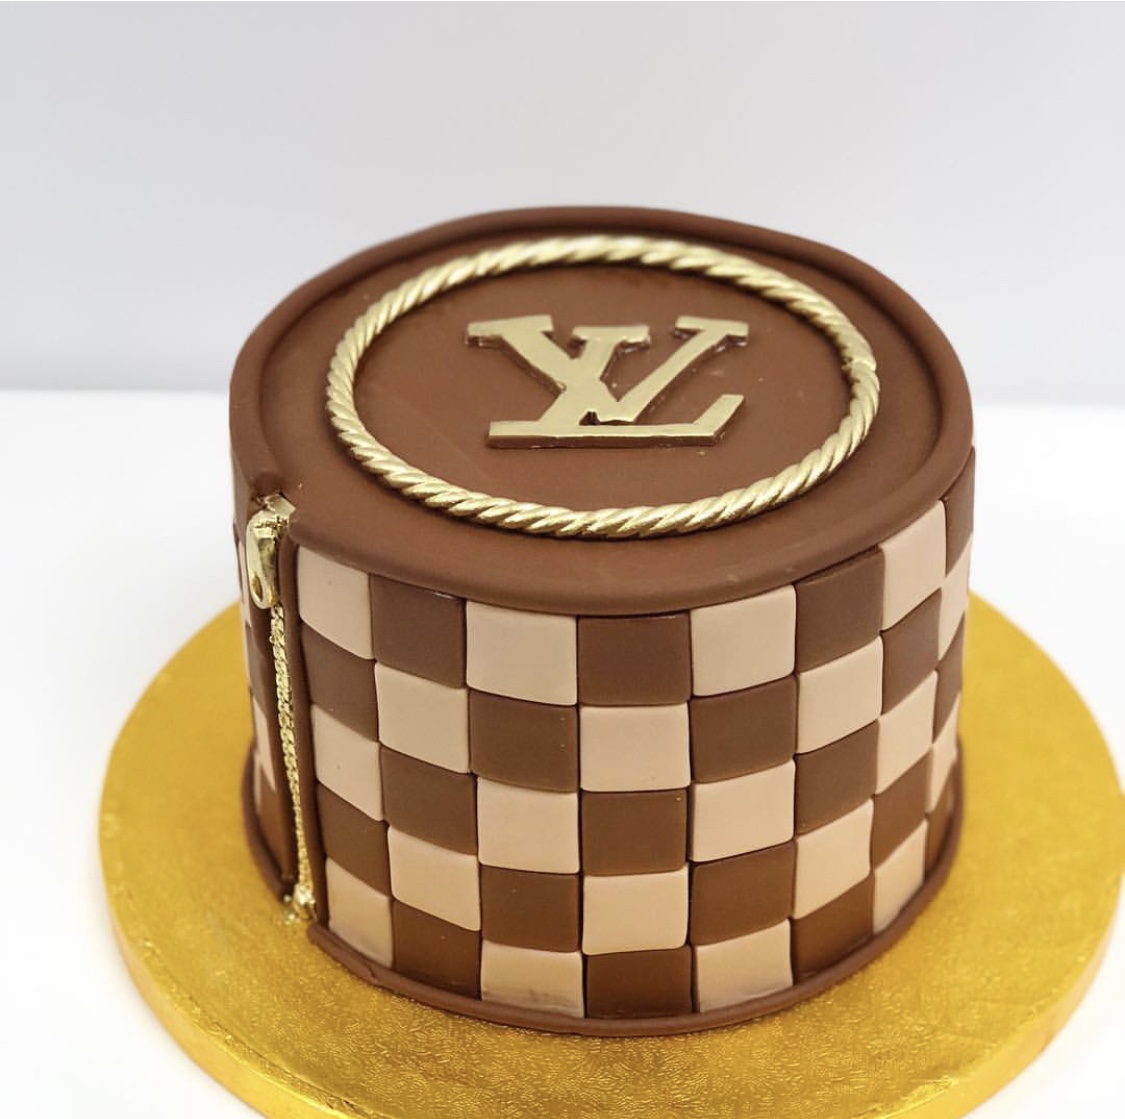 Louis Vuitton Birthday Party Ideas, Photo 19 of 26